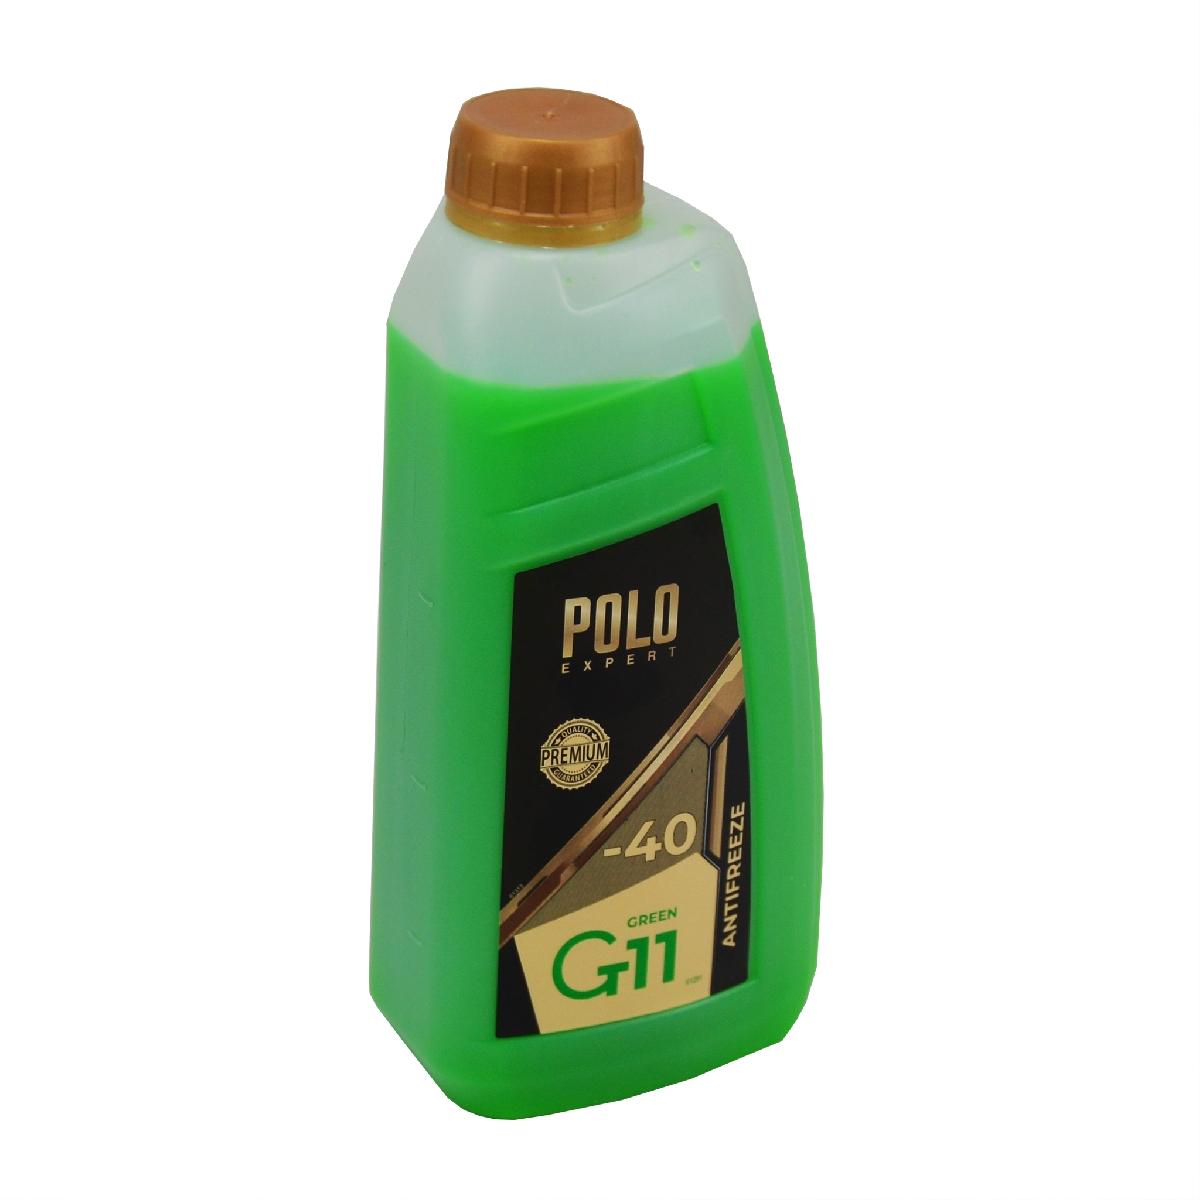 Тосол антифриз (охолоджуюча рідина) 1л зелений -40 G-11 Premium Polo Expert